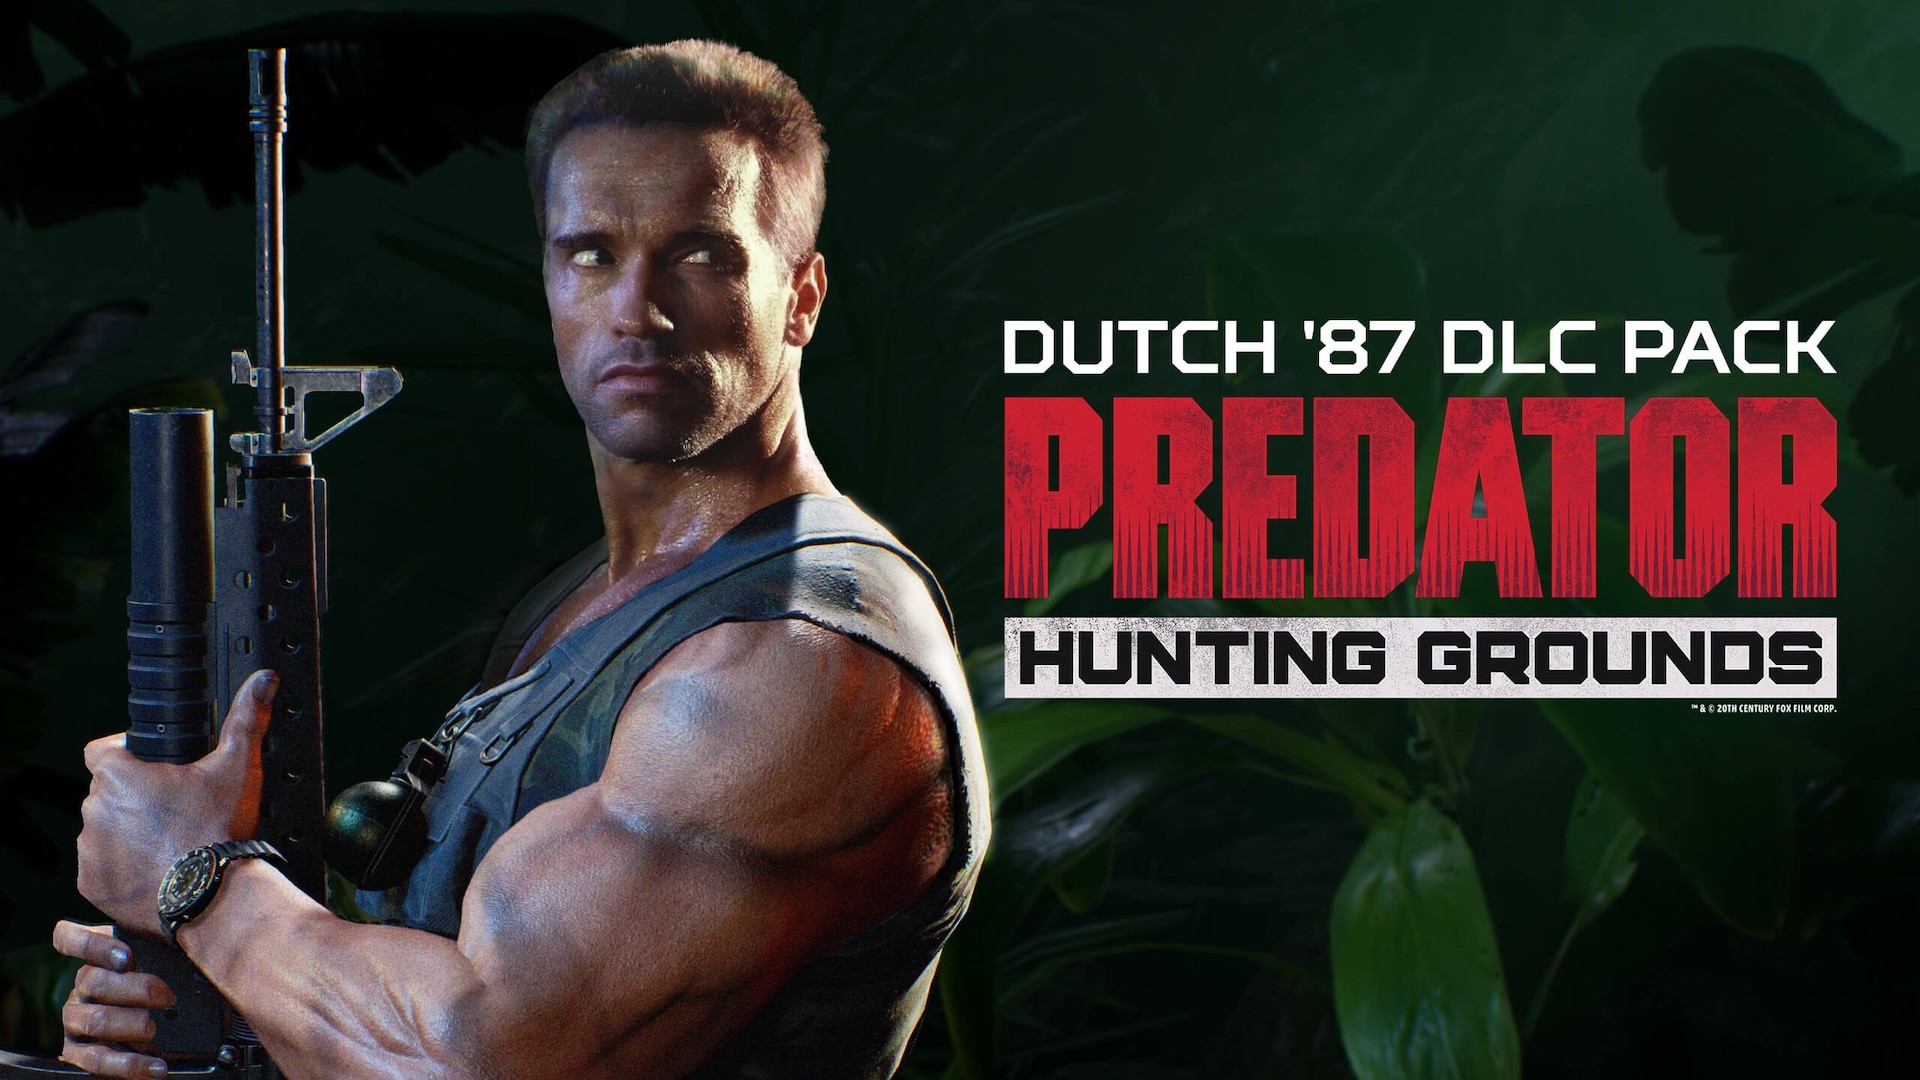 Predator: Hunting Grounds - Dutch '87 DLC Pack Featured Screenshot #1